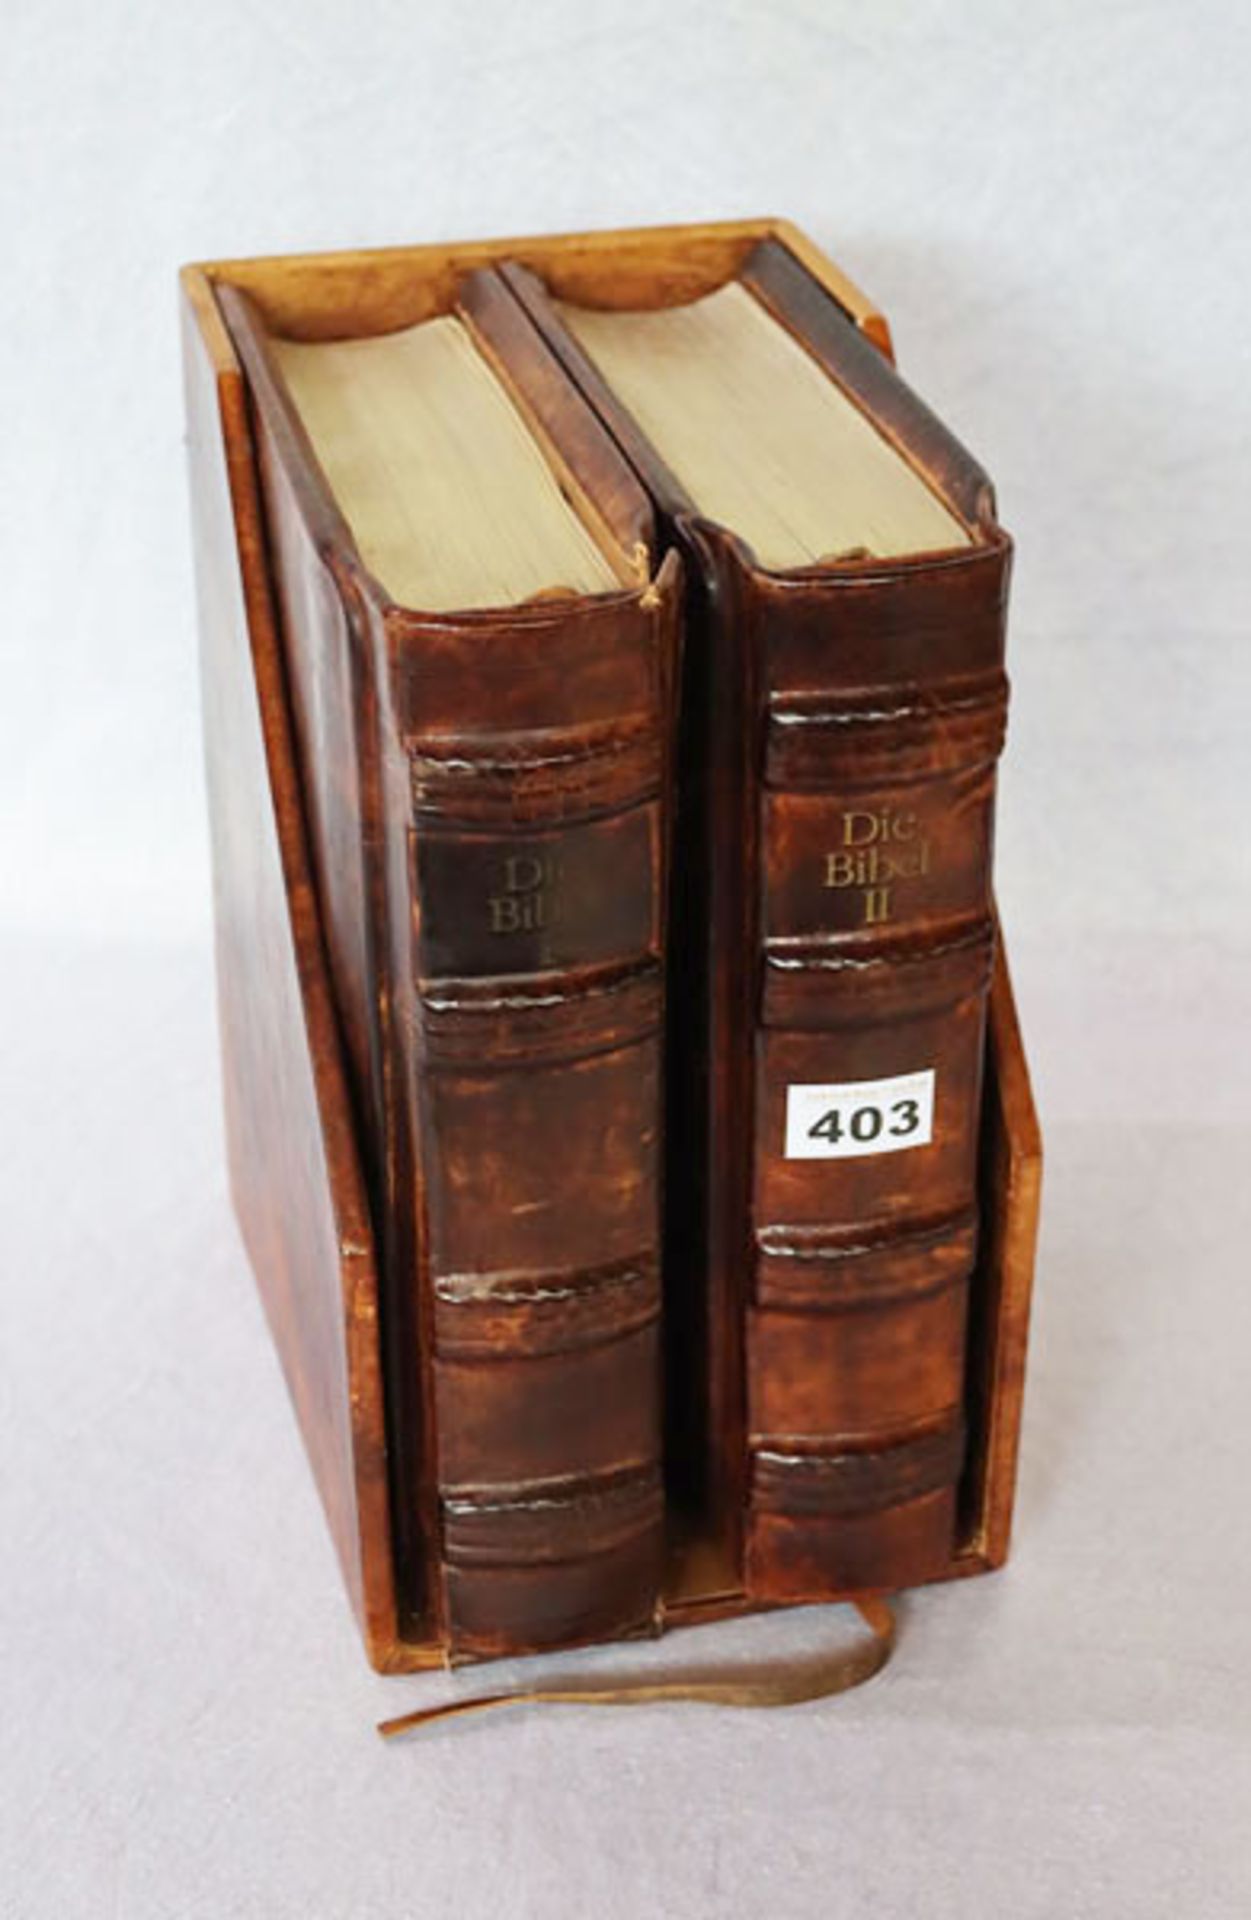 2 Bücher 'Die Grosse Bibel I und II', 1975, teils mit Goldschnitt, in Leder gebunden mit Schuber,